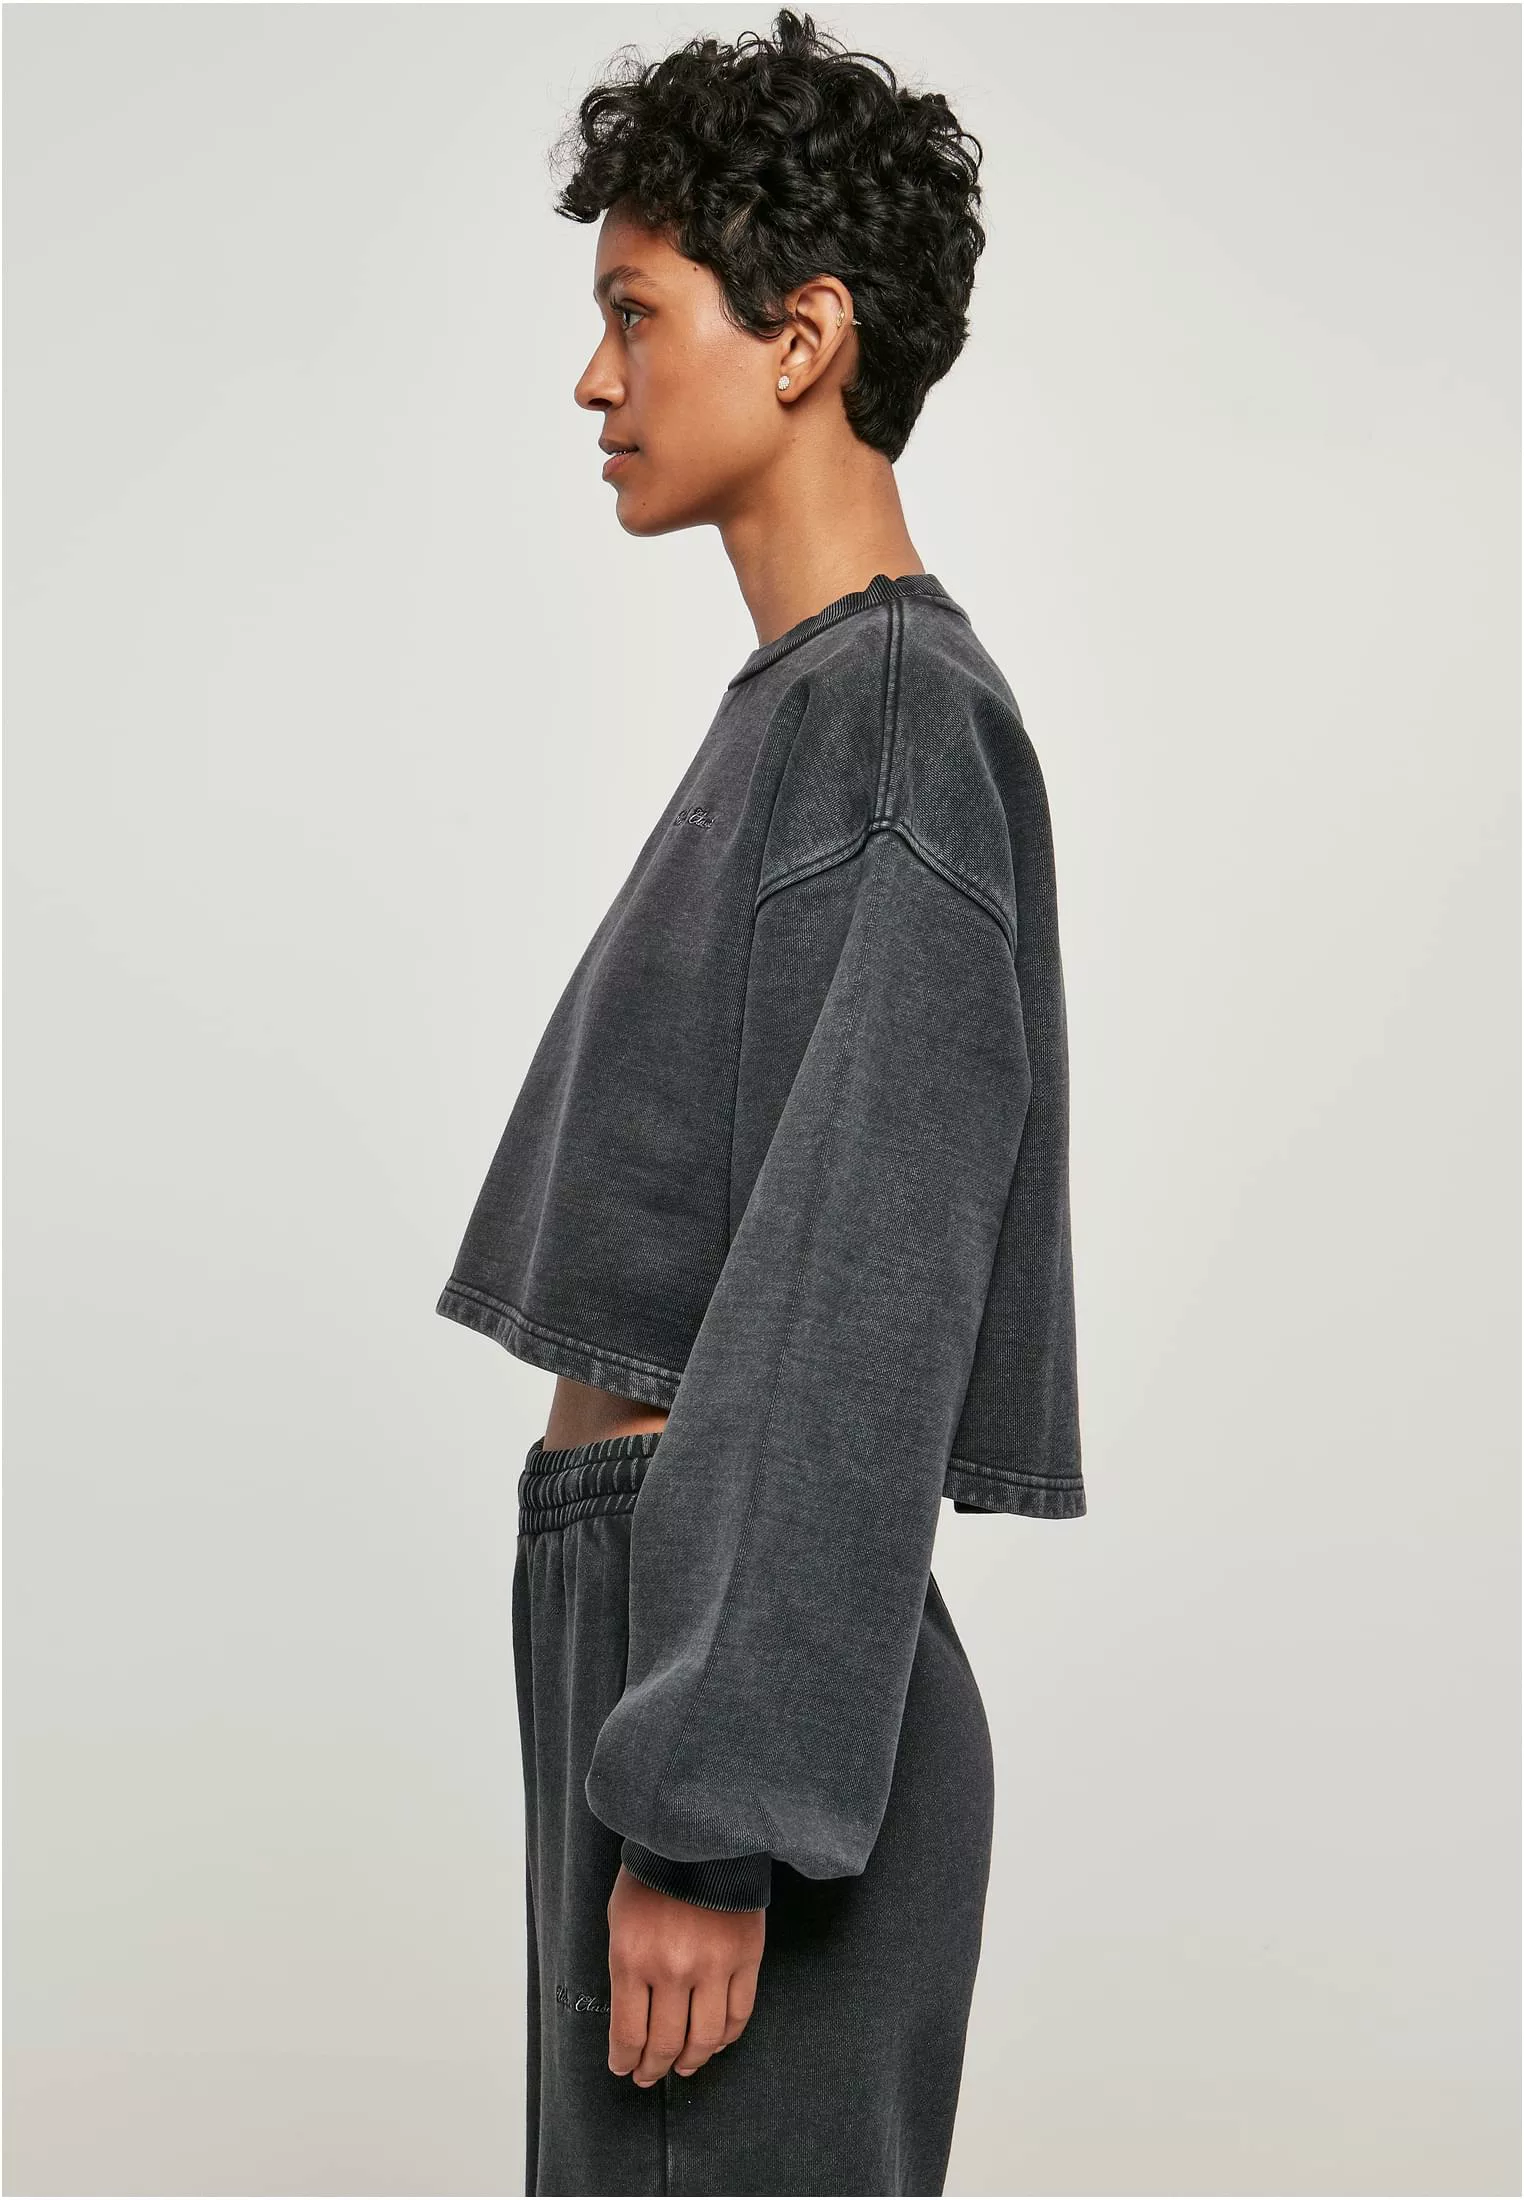 URBAN CLASSICS Sweater "Urban Classics Damen" günstig online kaufen